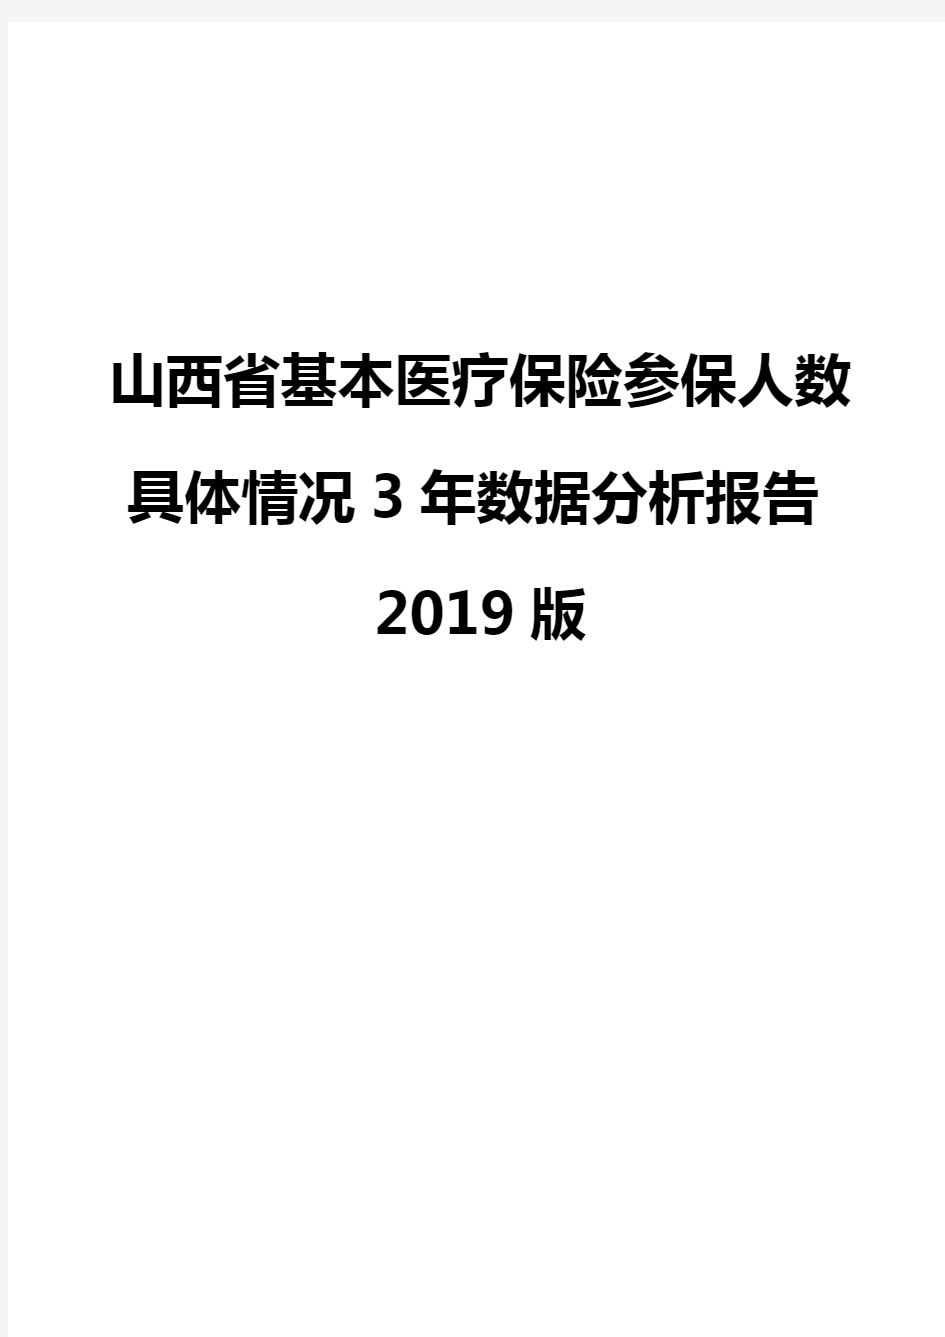 山西省基本医疗保险参保人数具体情况3年数据分析报告2019版